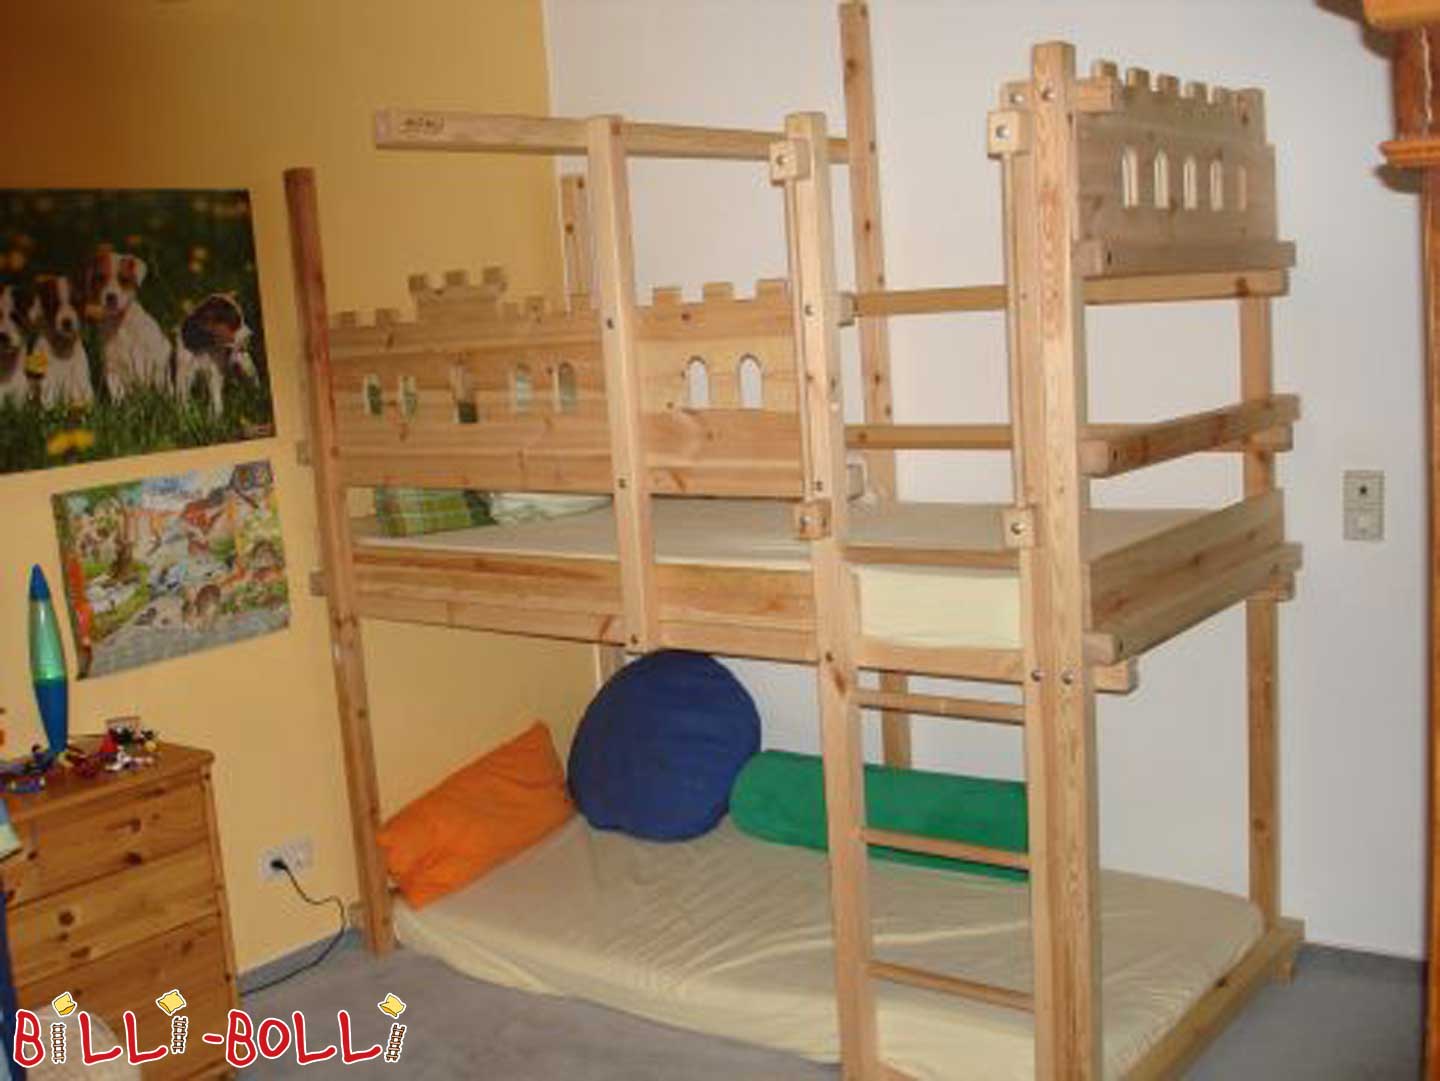 Rüütli pööningu voodi Billi-Bolli, mis kasvab koos lapsega (Kategooria: Kasutatud loft-voodi)